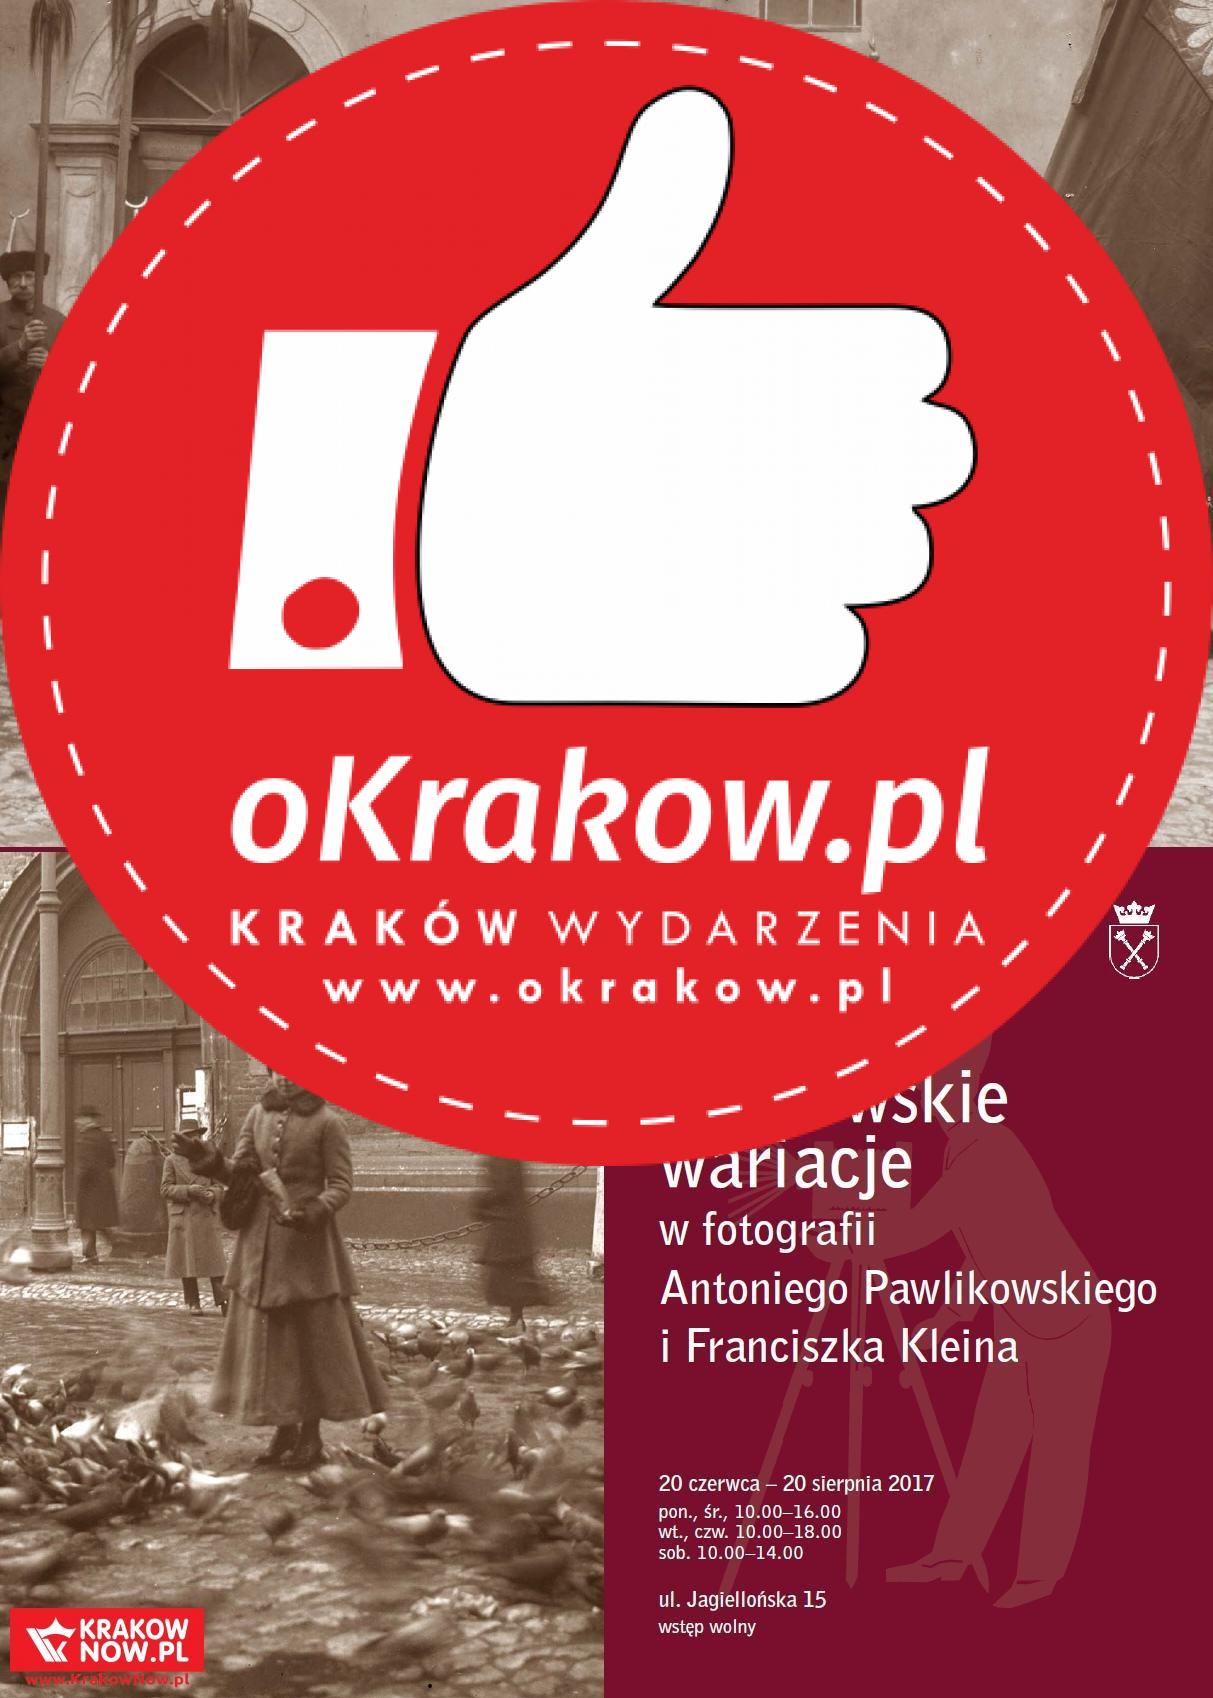 article 1 - Krakowskie wariacje w fotografii Antoniego Pawlikowskiego i Franciszka Kleina